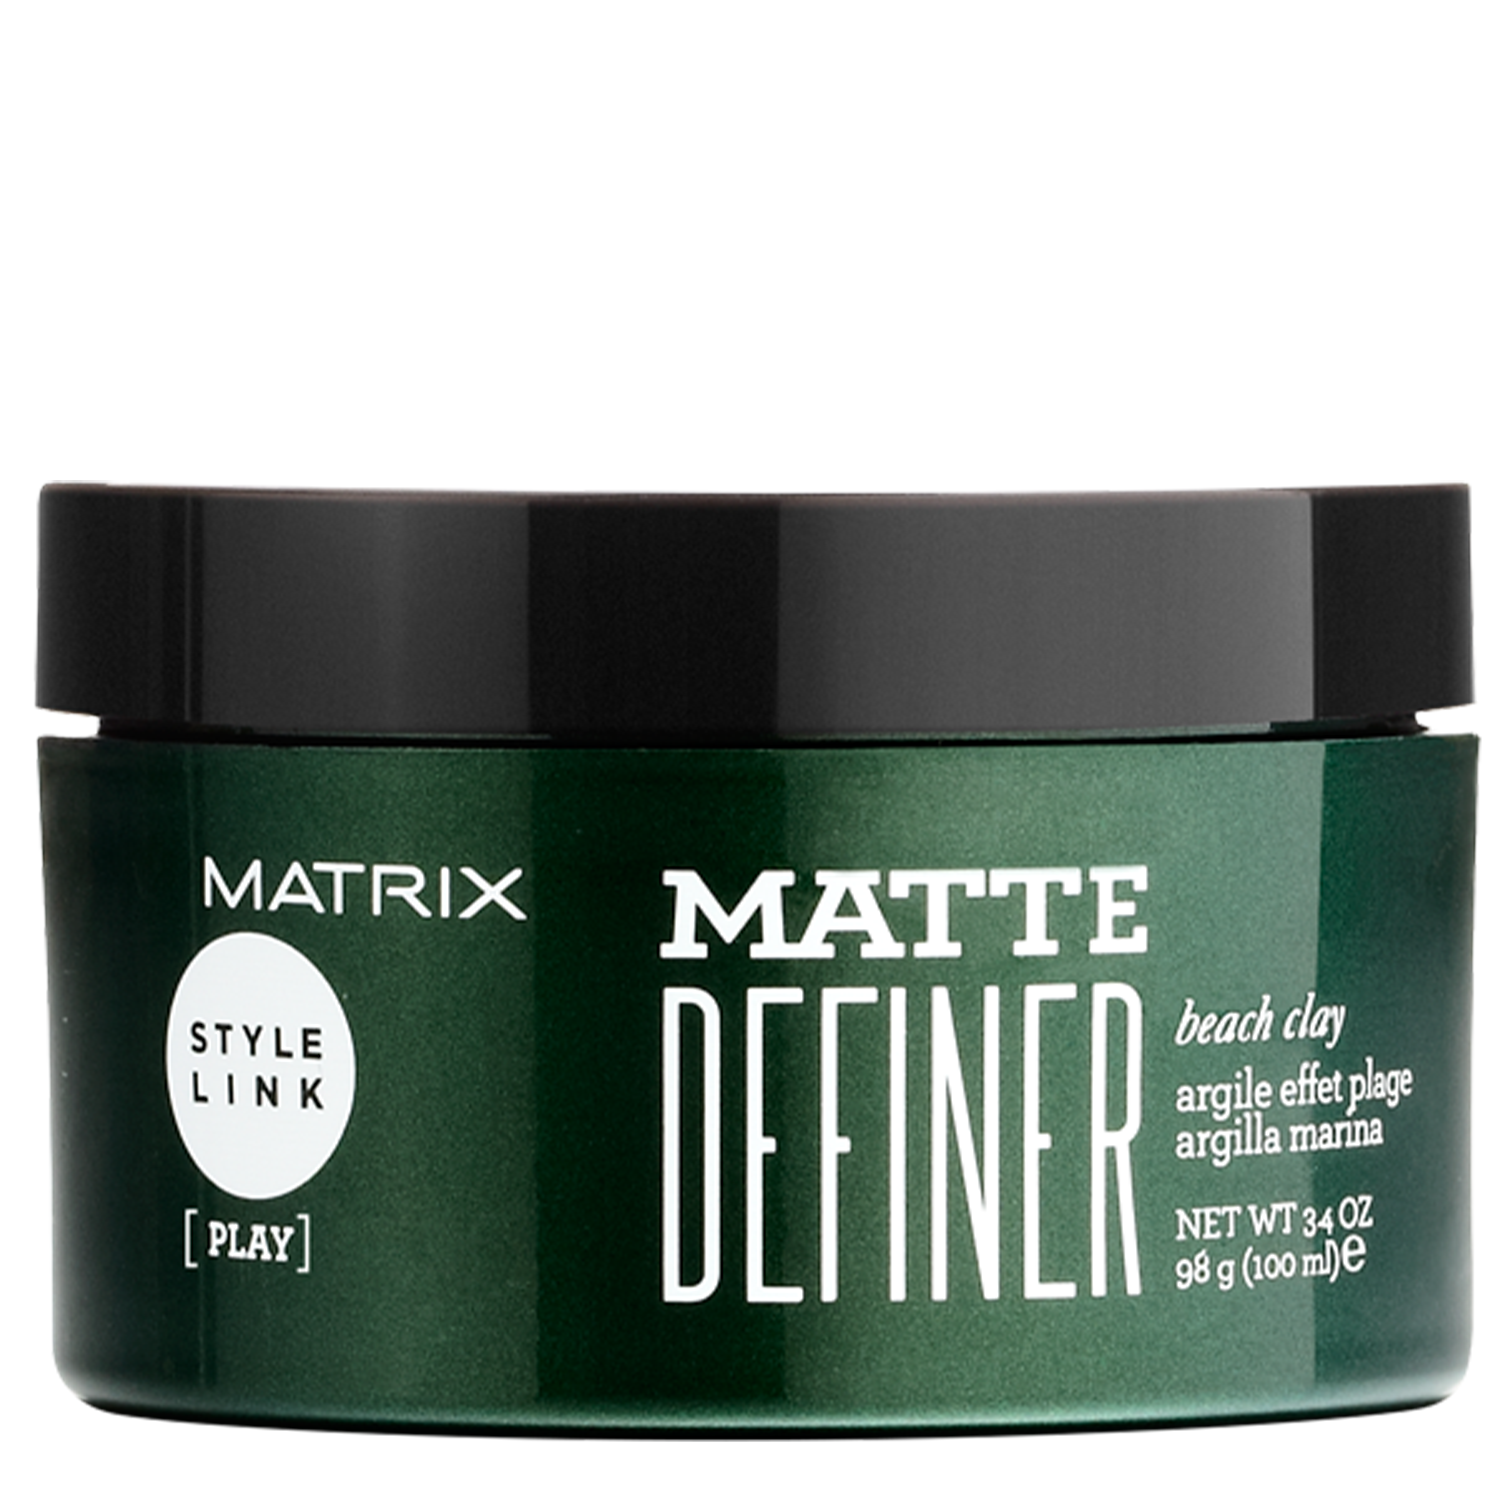 -MATRIX STYLE LINK MATTE DEFINER BEACH CLAY 100ML 0963001